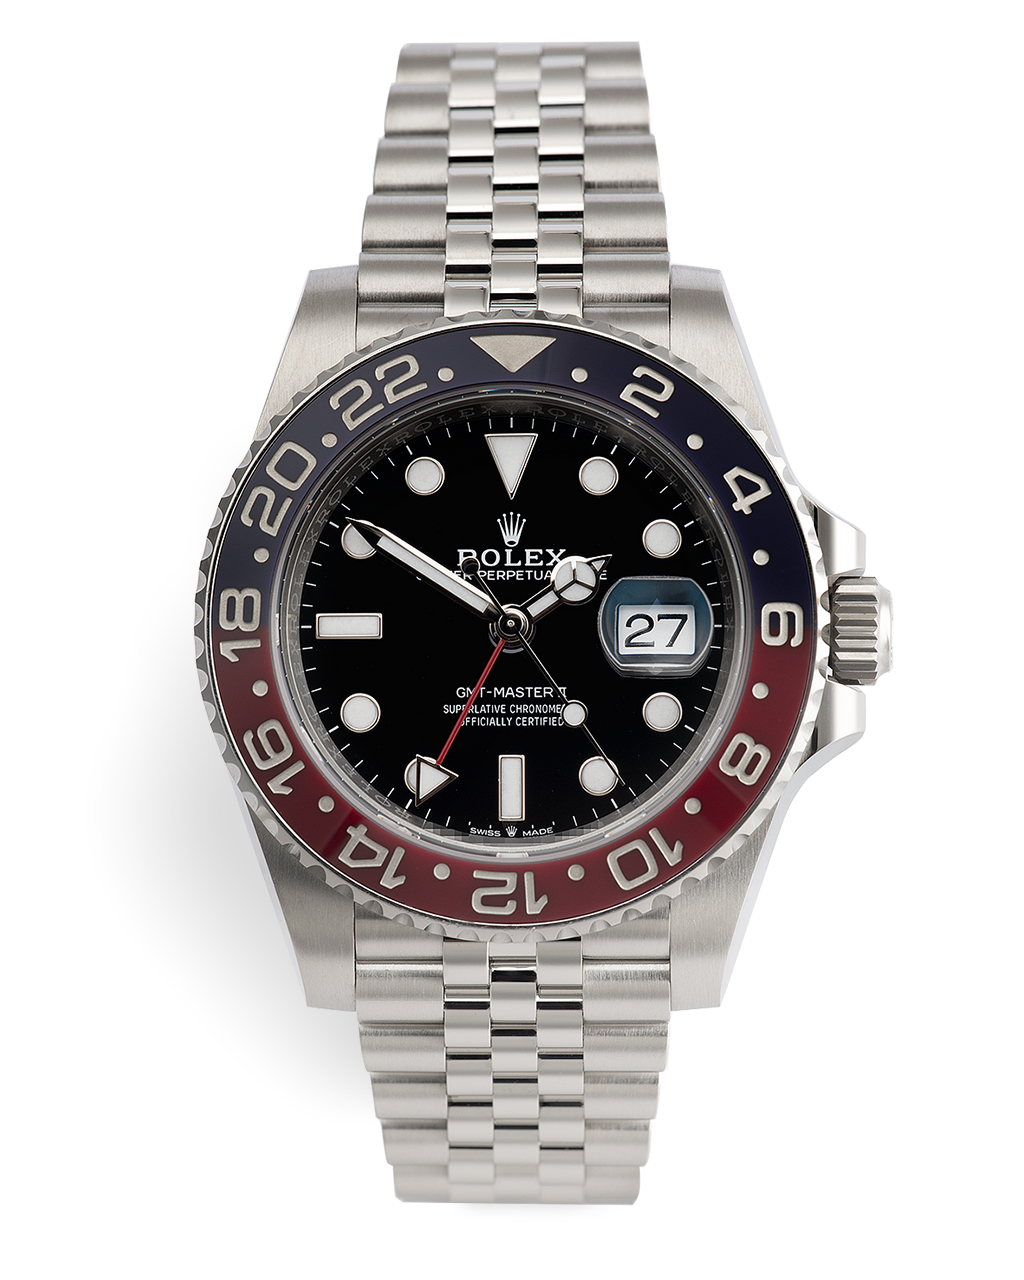 Rolex GMT-Master II Watches | ref 126710BLRO | Rolex Warranty to 2025 ...